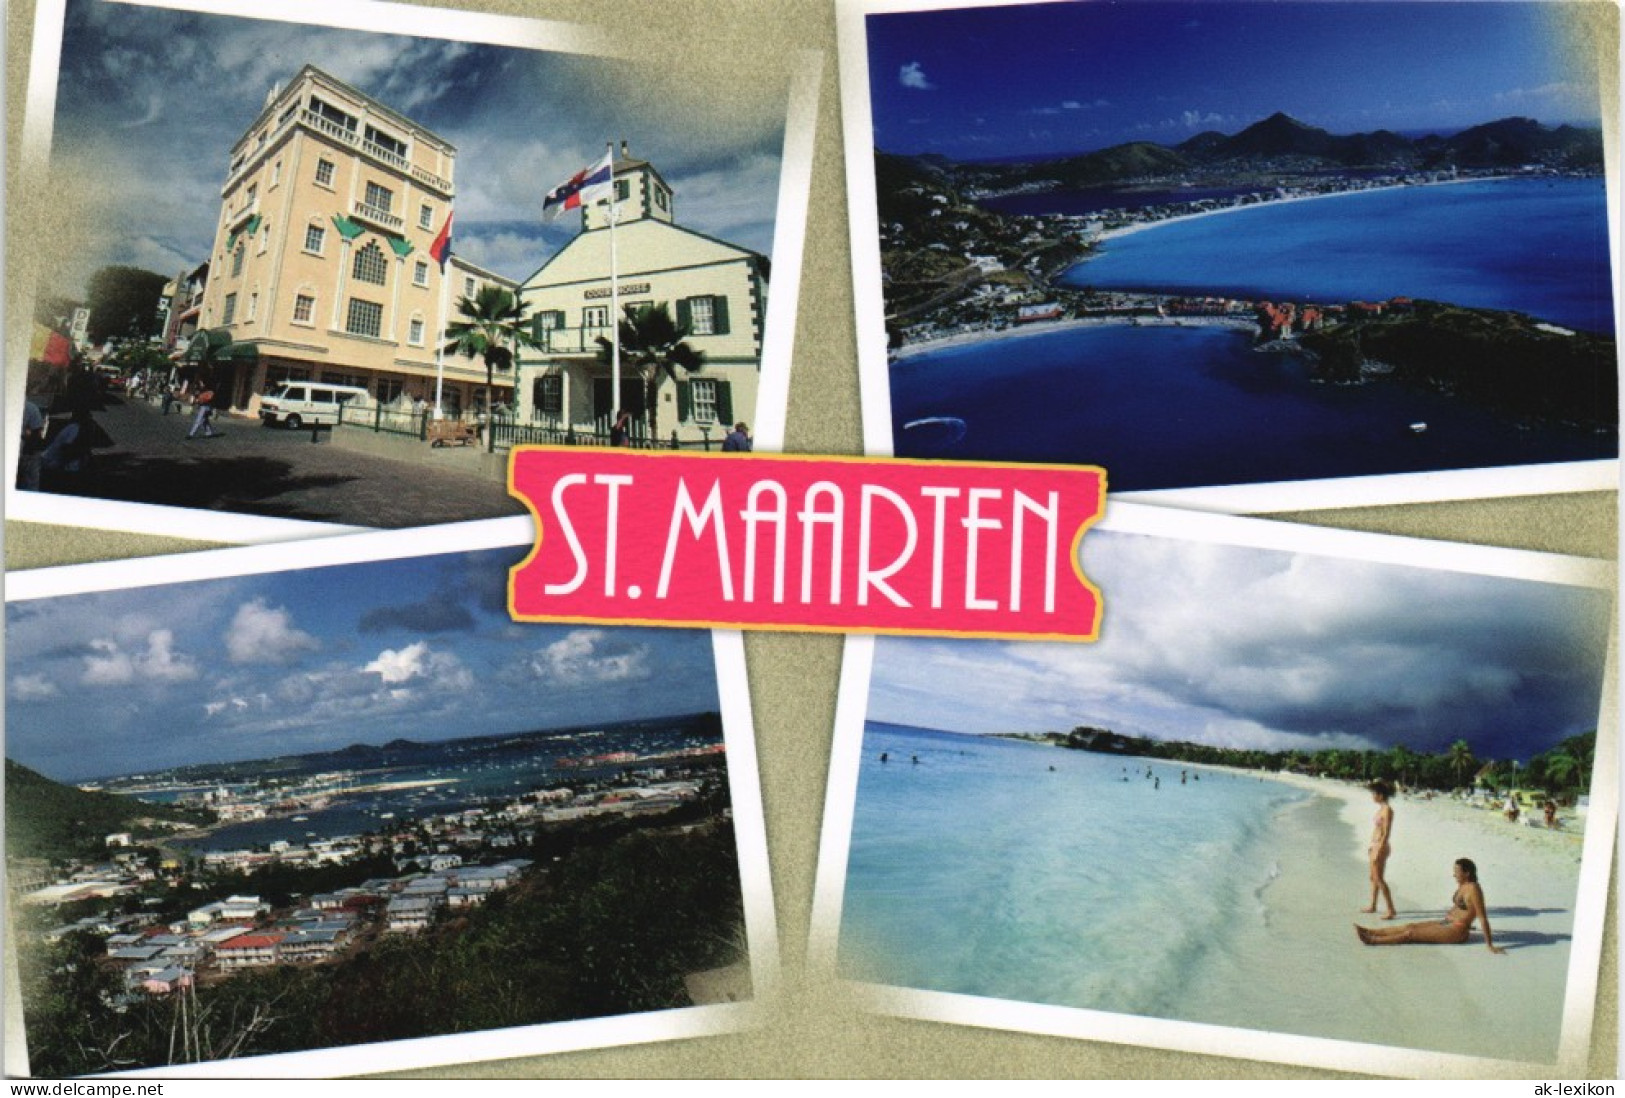 Sint Maarten ST. MAARTEN Antillen Karibik Insel Multi-View-Postcard 2000 - Saint-Martin